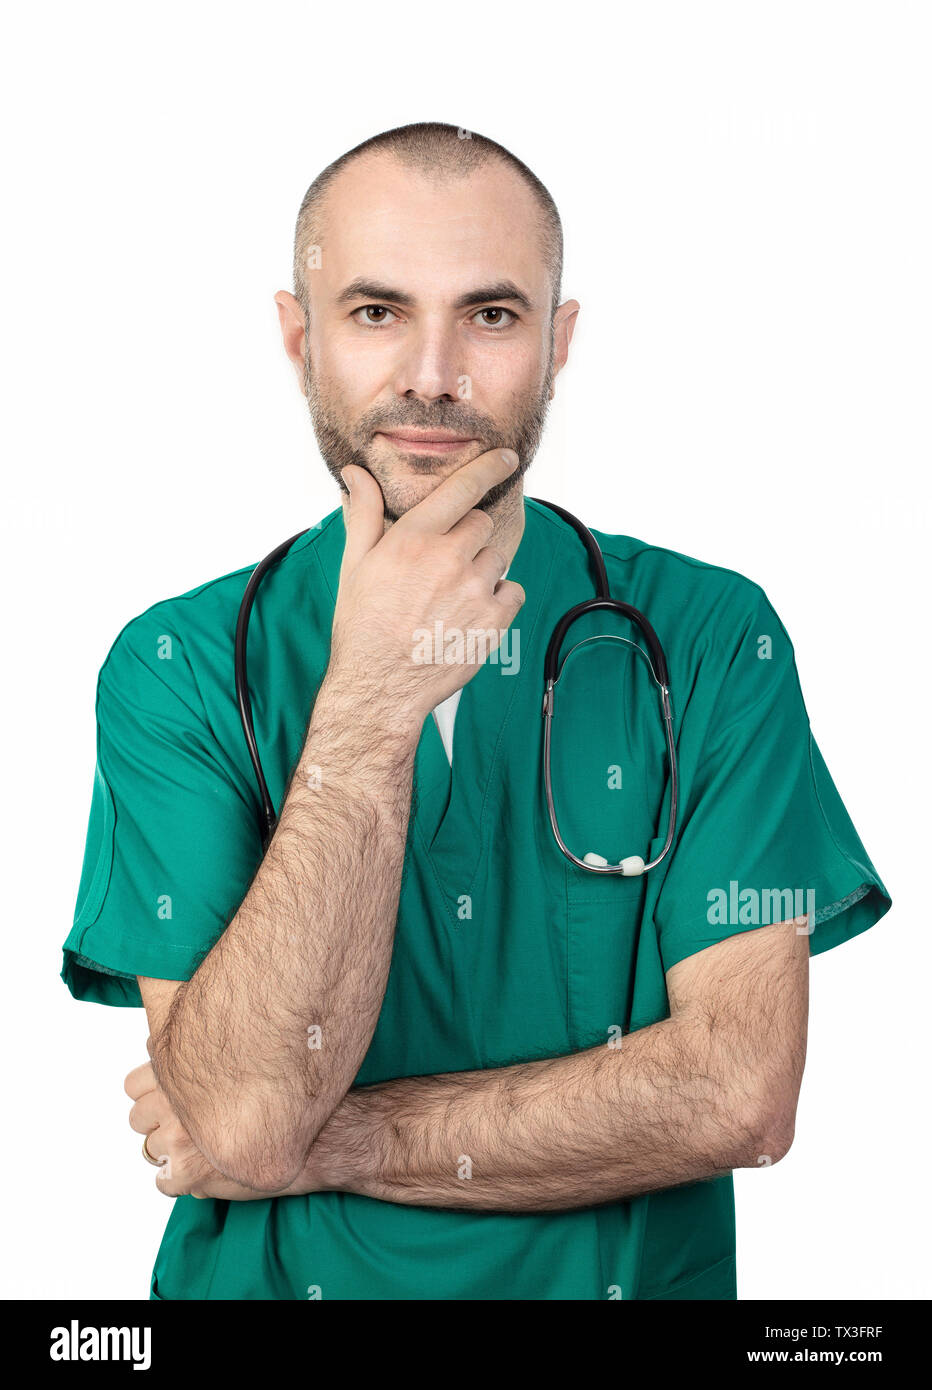 Ritratto di giovane medico usura uniforme verde e isolato su sfondo bianco Foto Stock